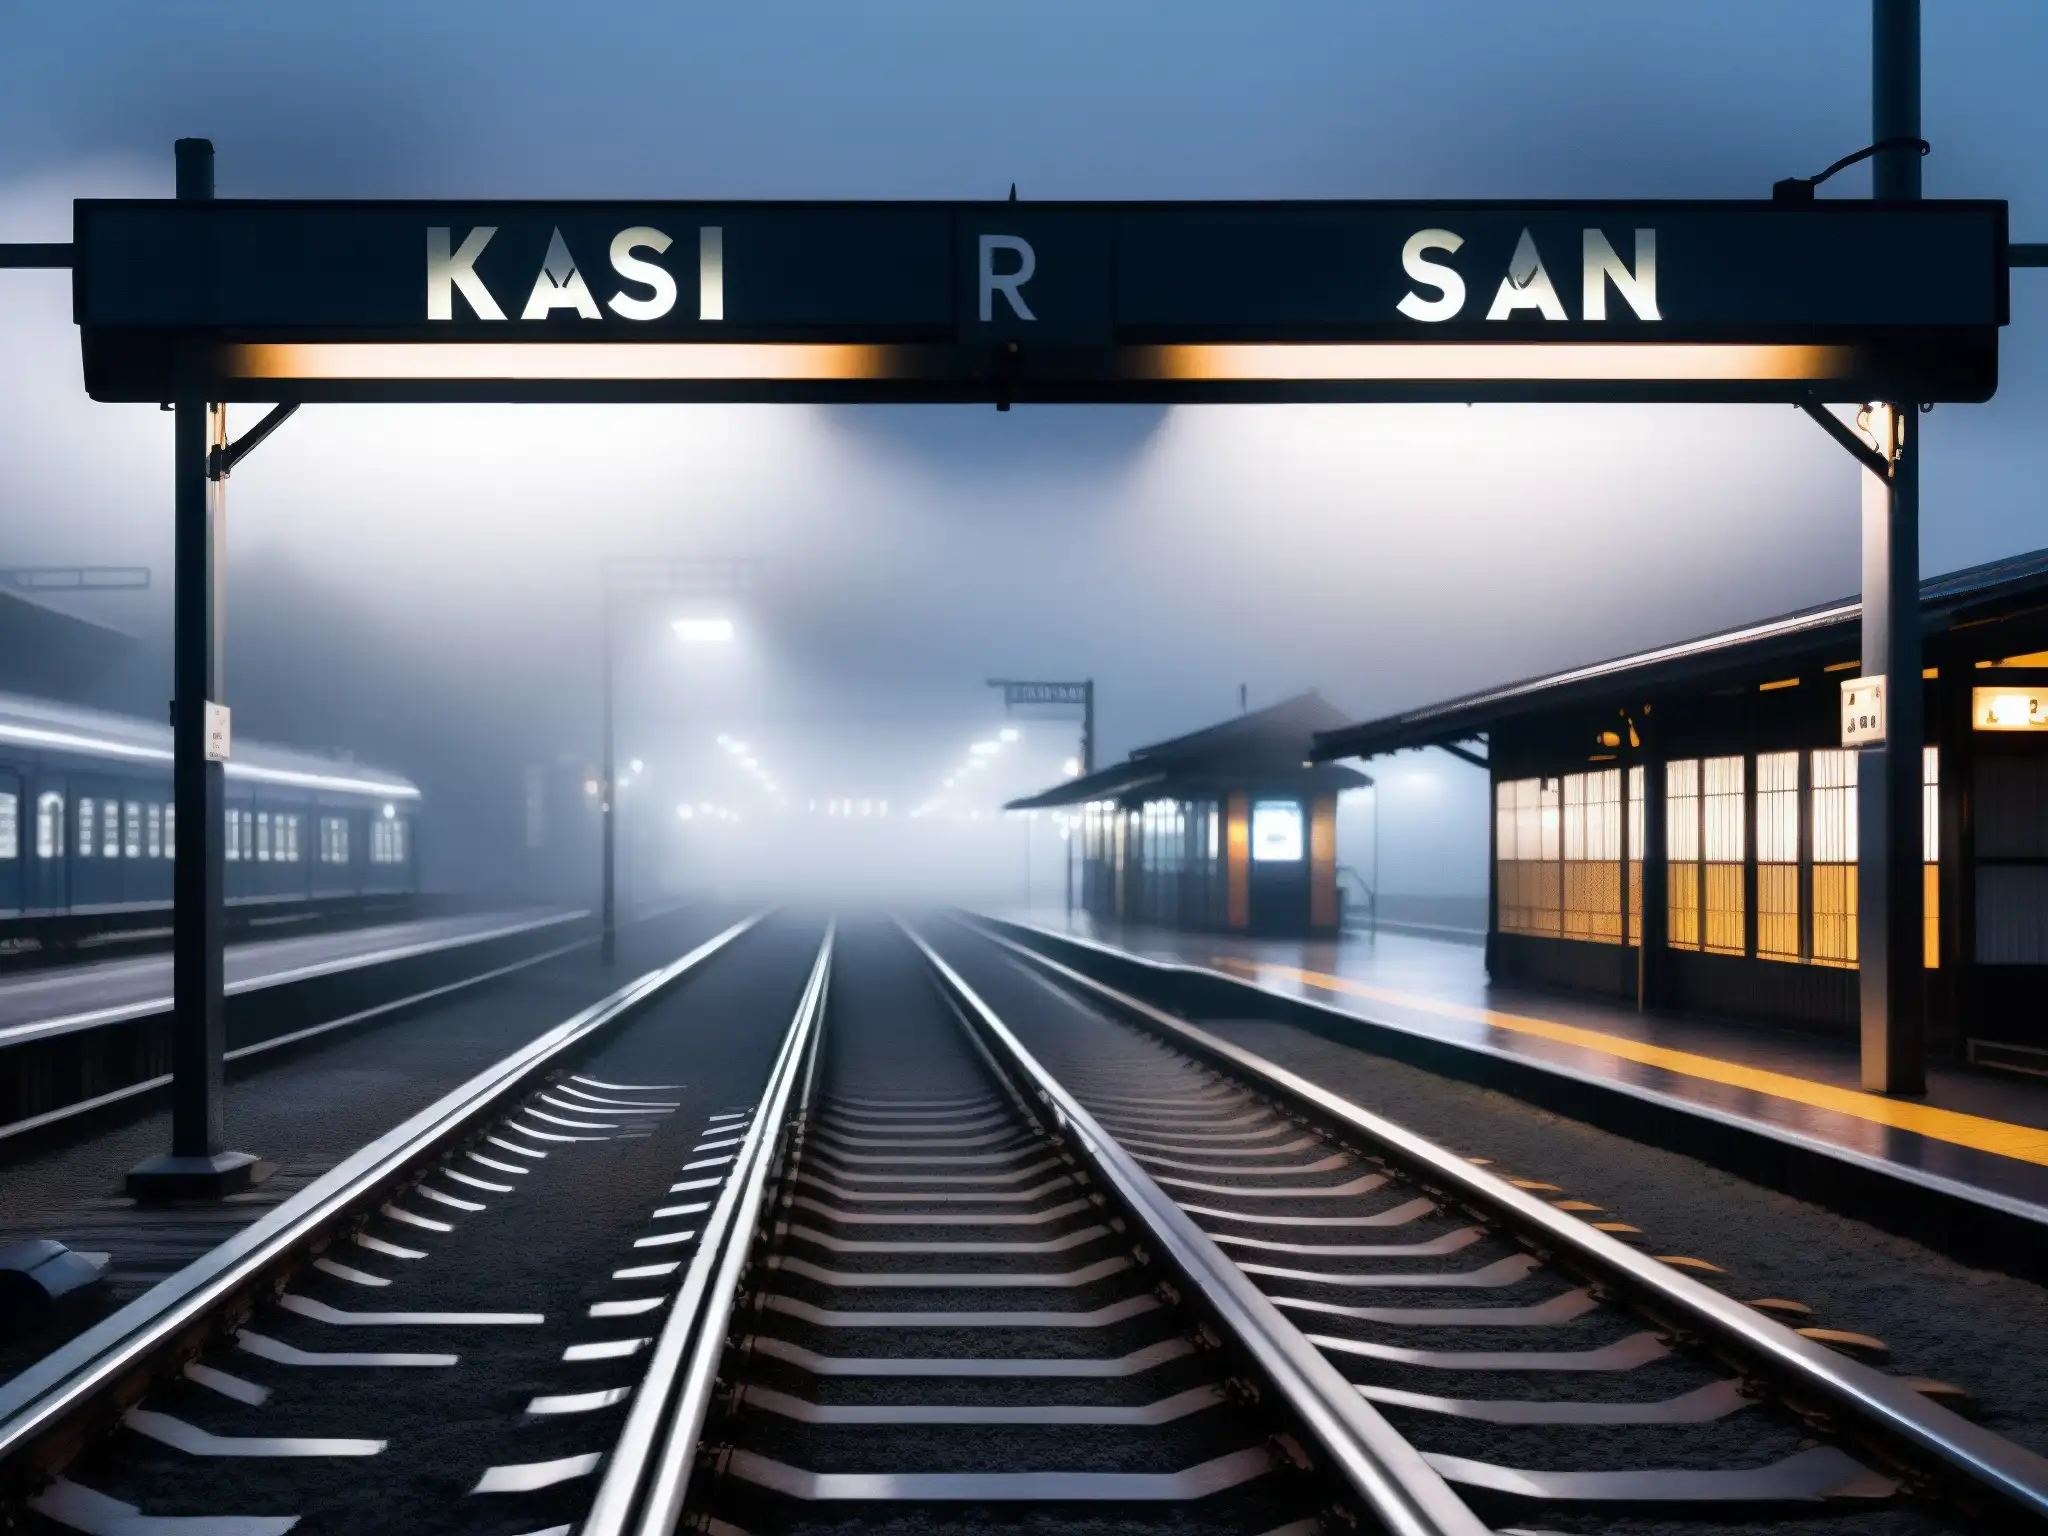 Misteriosa plataforma vacía de la estación Kisaragi al anochecer, envuelta en niebla